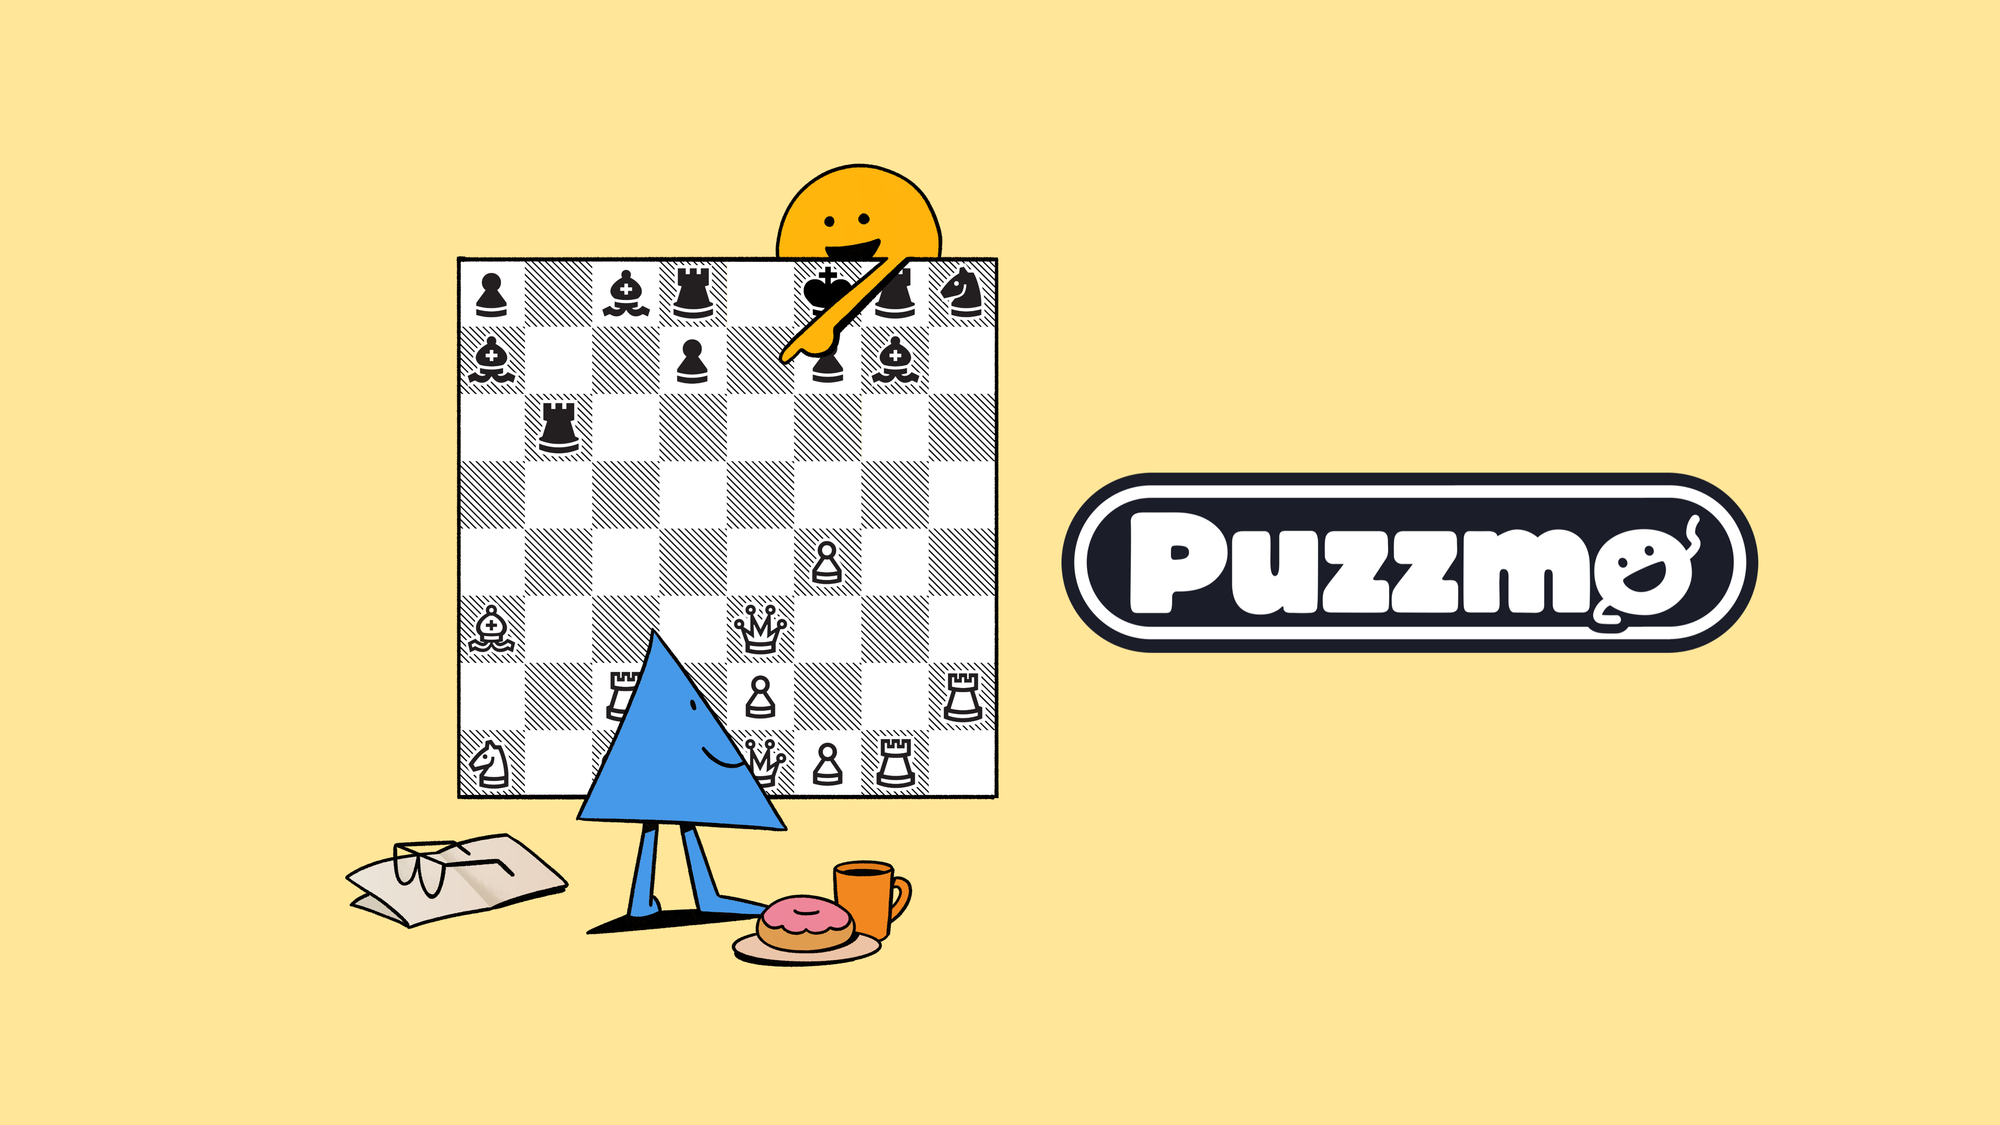 Puzzmo on LinkedIn: #puzzmo #puzzmotoday #typeshift #puzzles